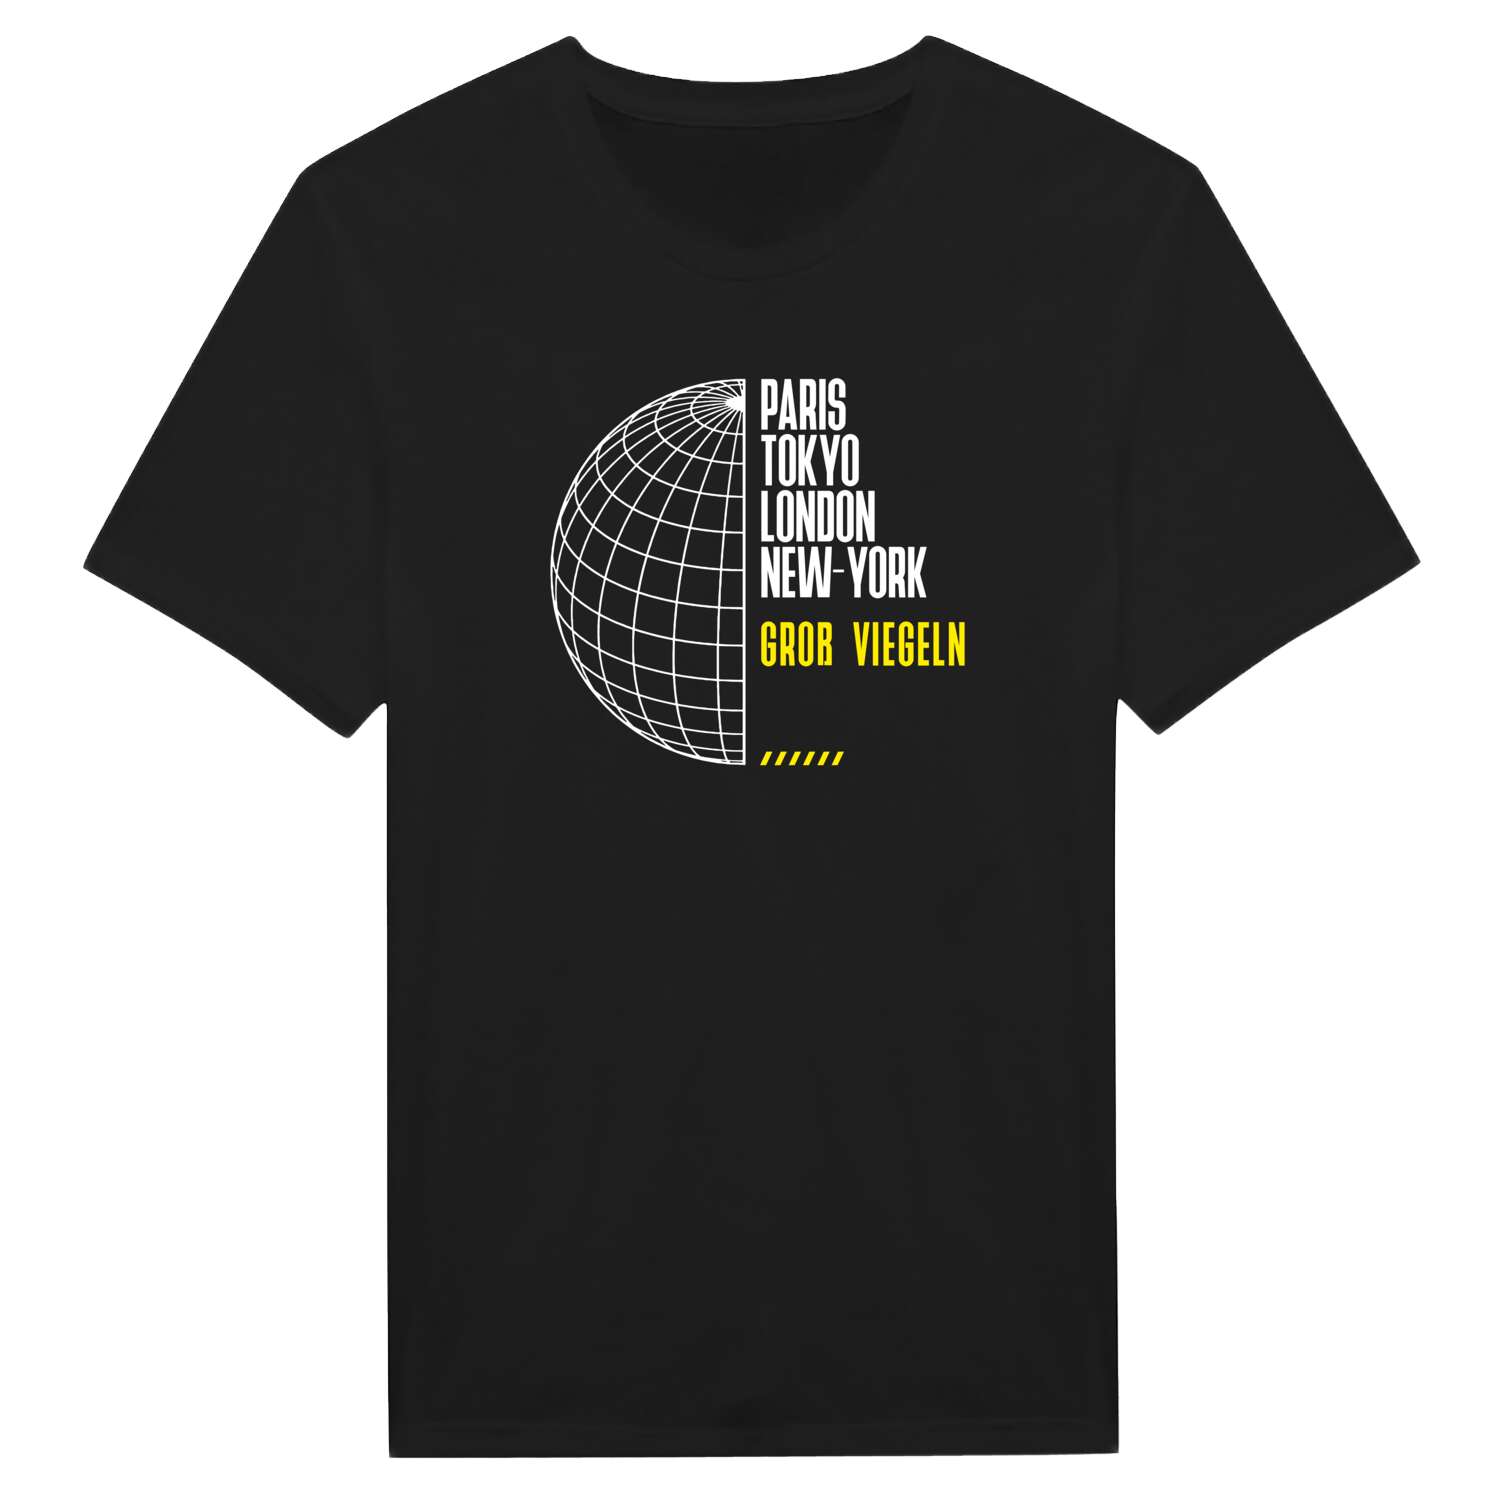 Groß Viegeln T-Shirt »Paris Tokyo London«